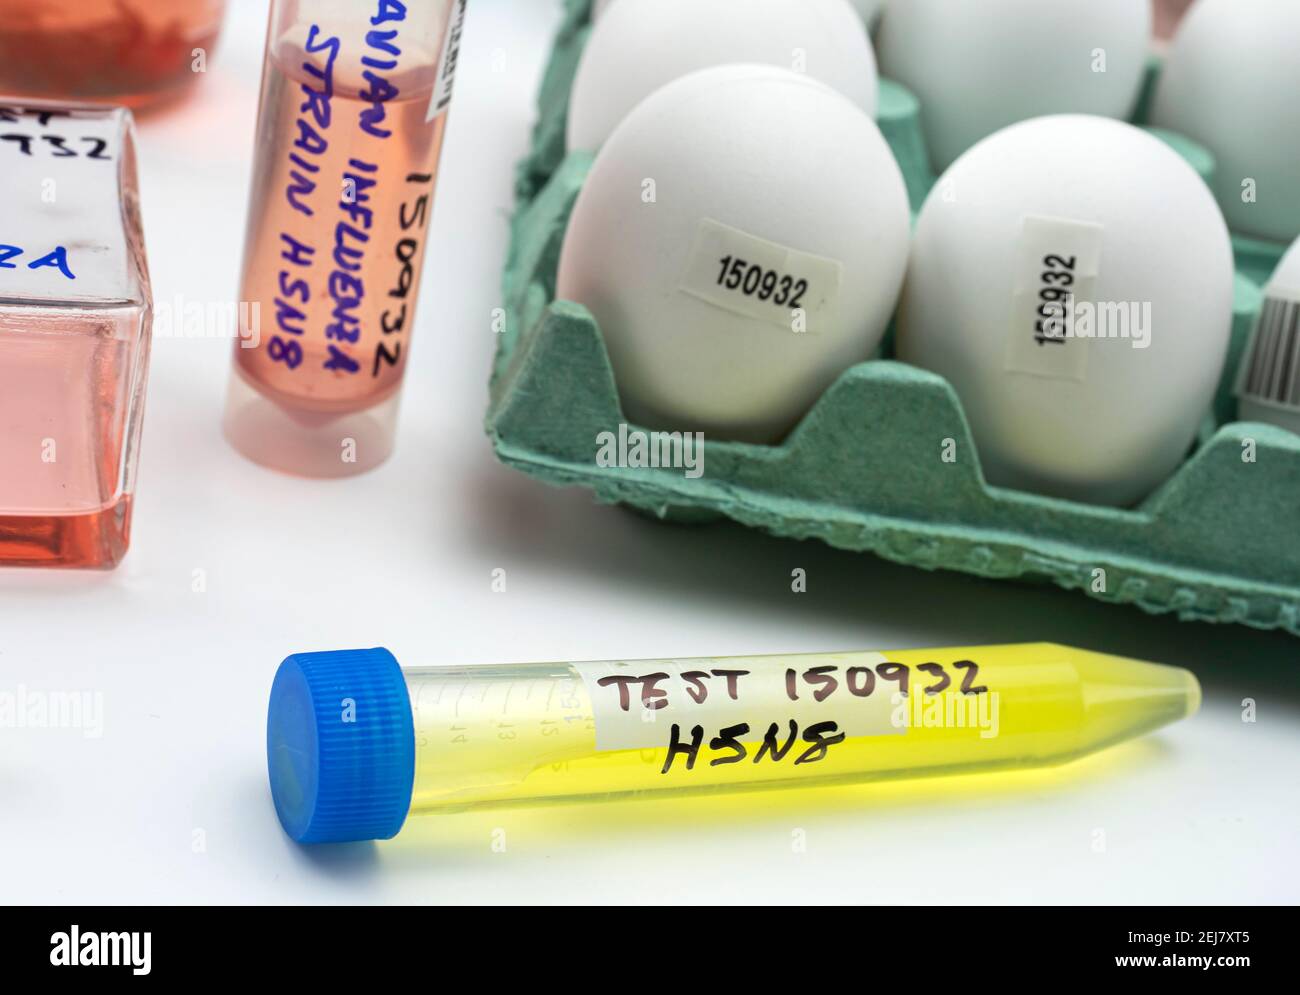 Neuer Stamm von H5N8 Vogelgrippe infiziert beim Menschen, Fläschchen mit Proben, konzeptuelles Bild Stockfoto